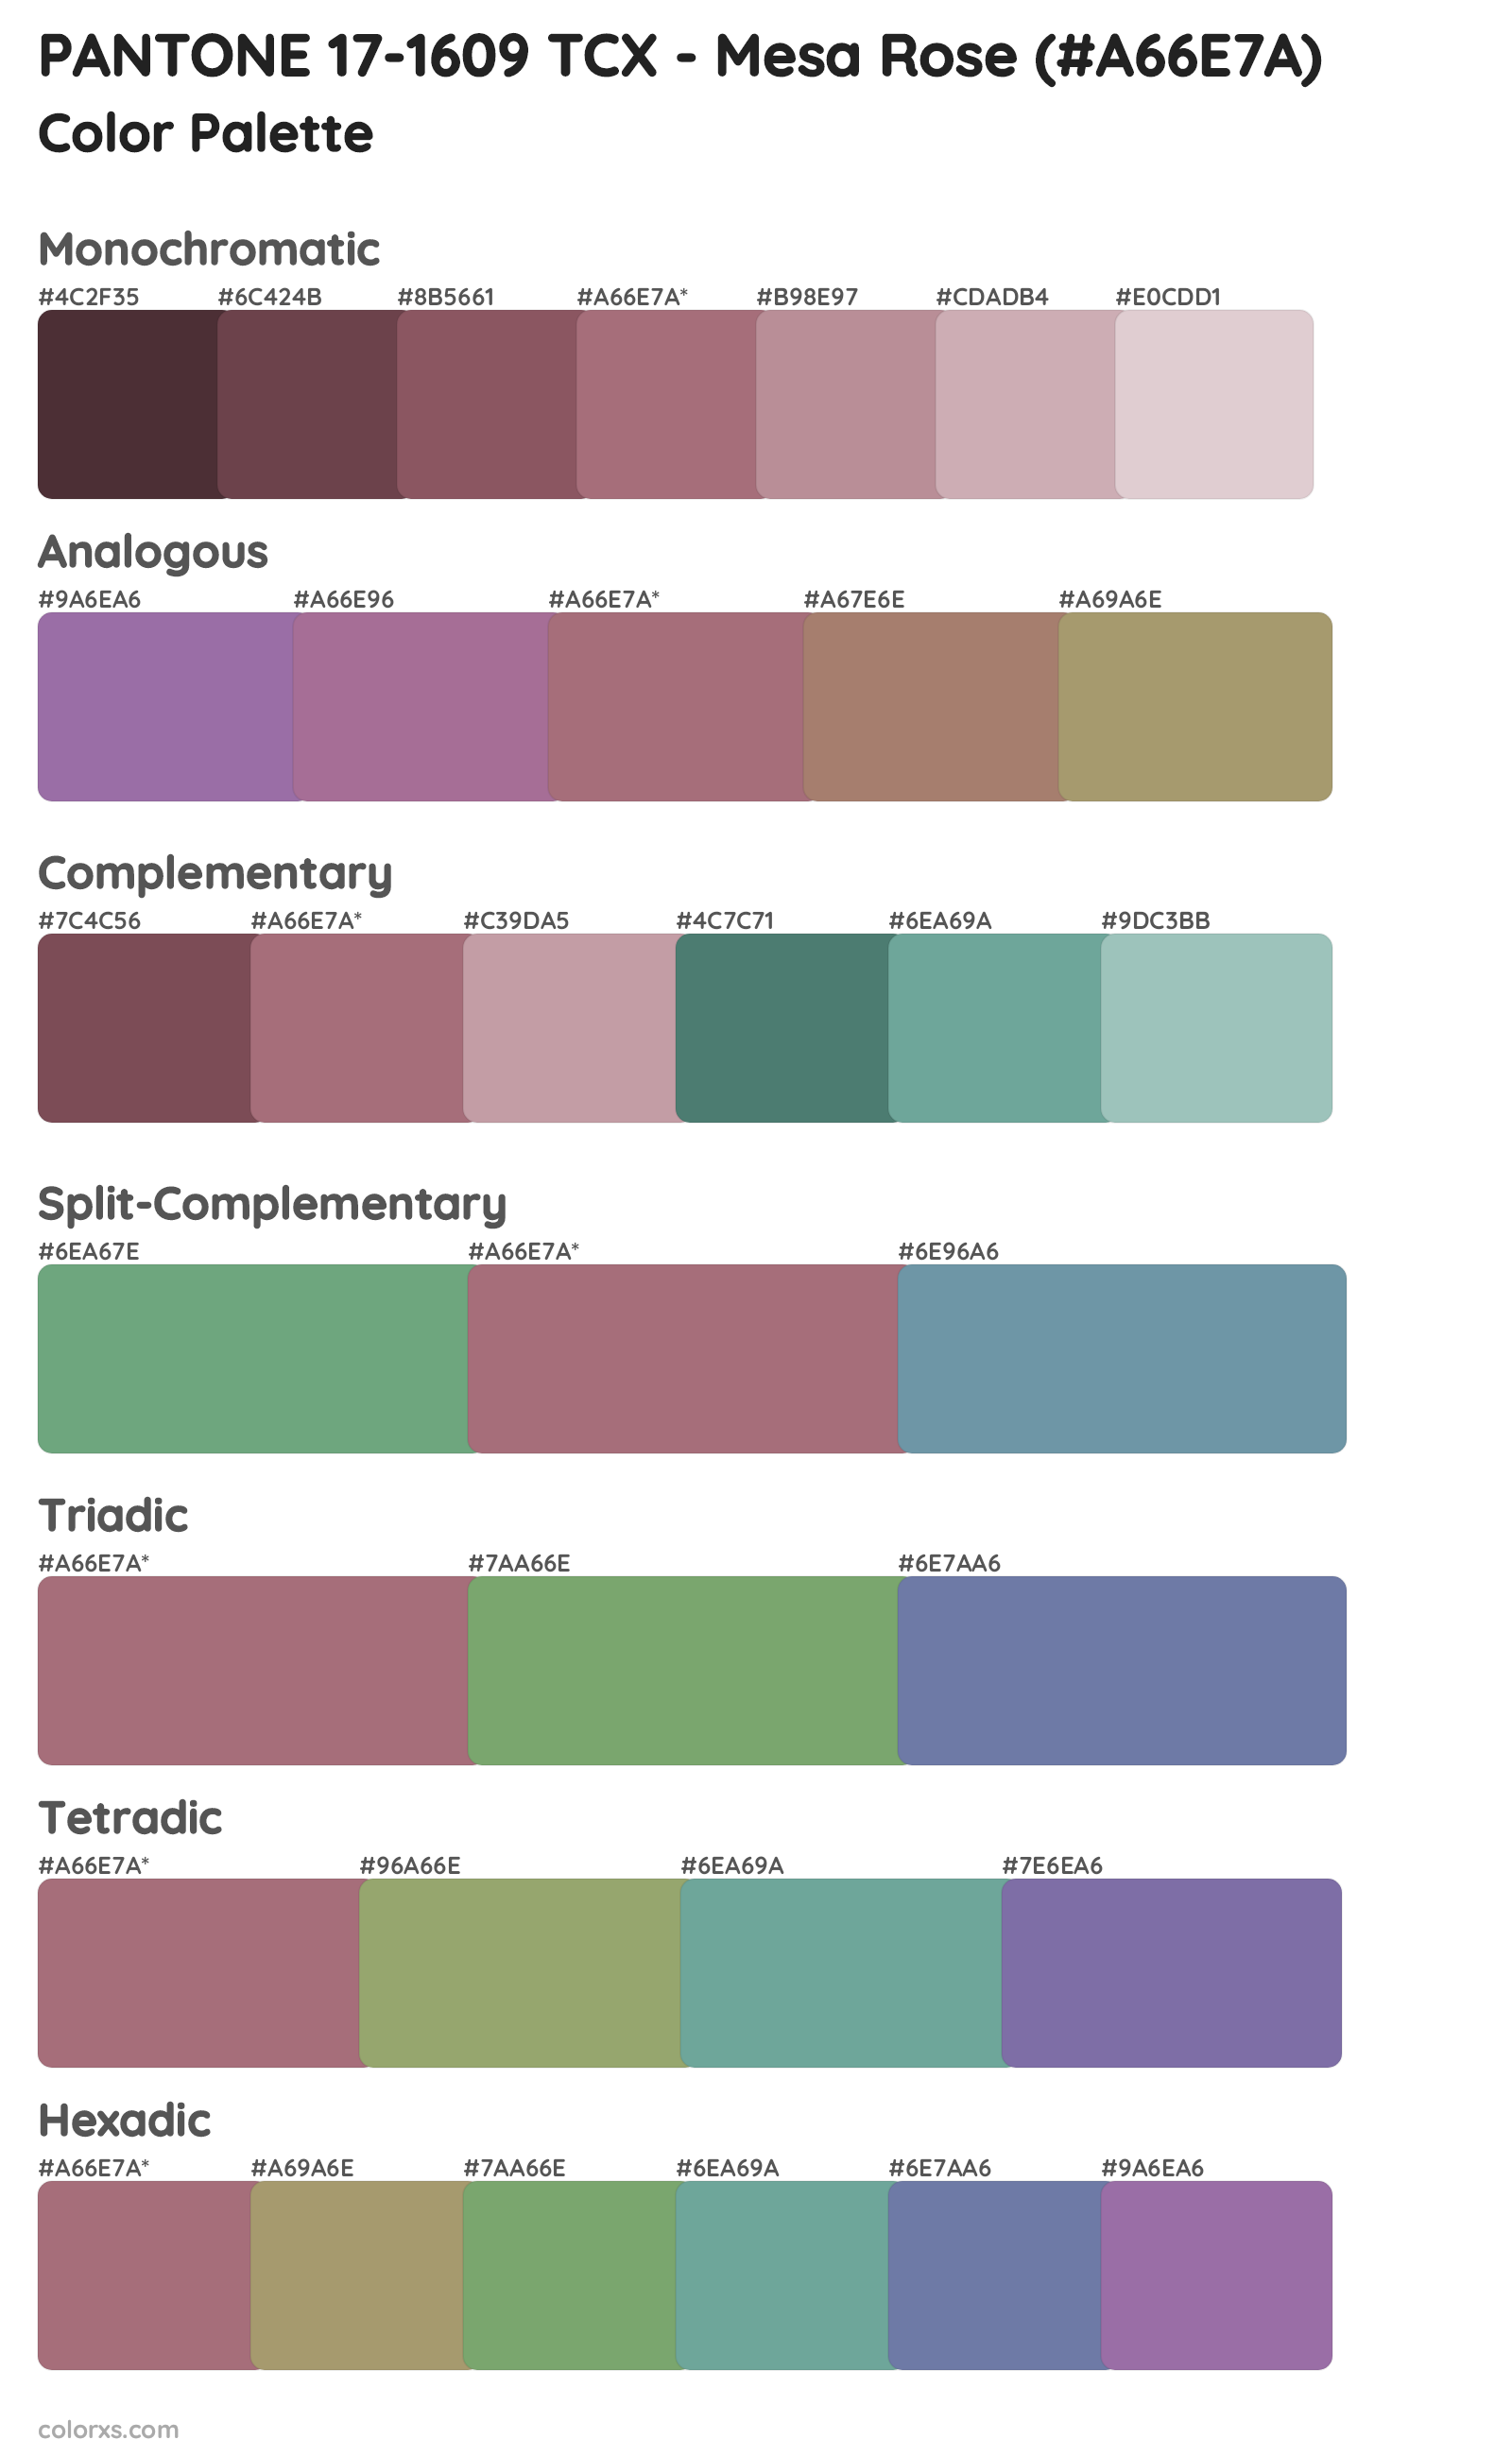 PANTONE 17-1609 TCX - Mesa Rose Color Scheme Palettes